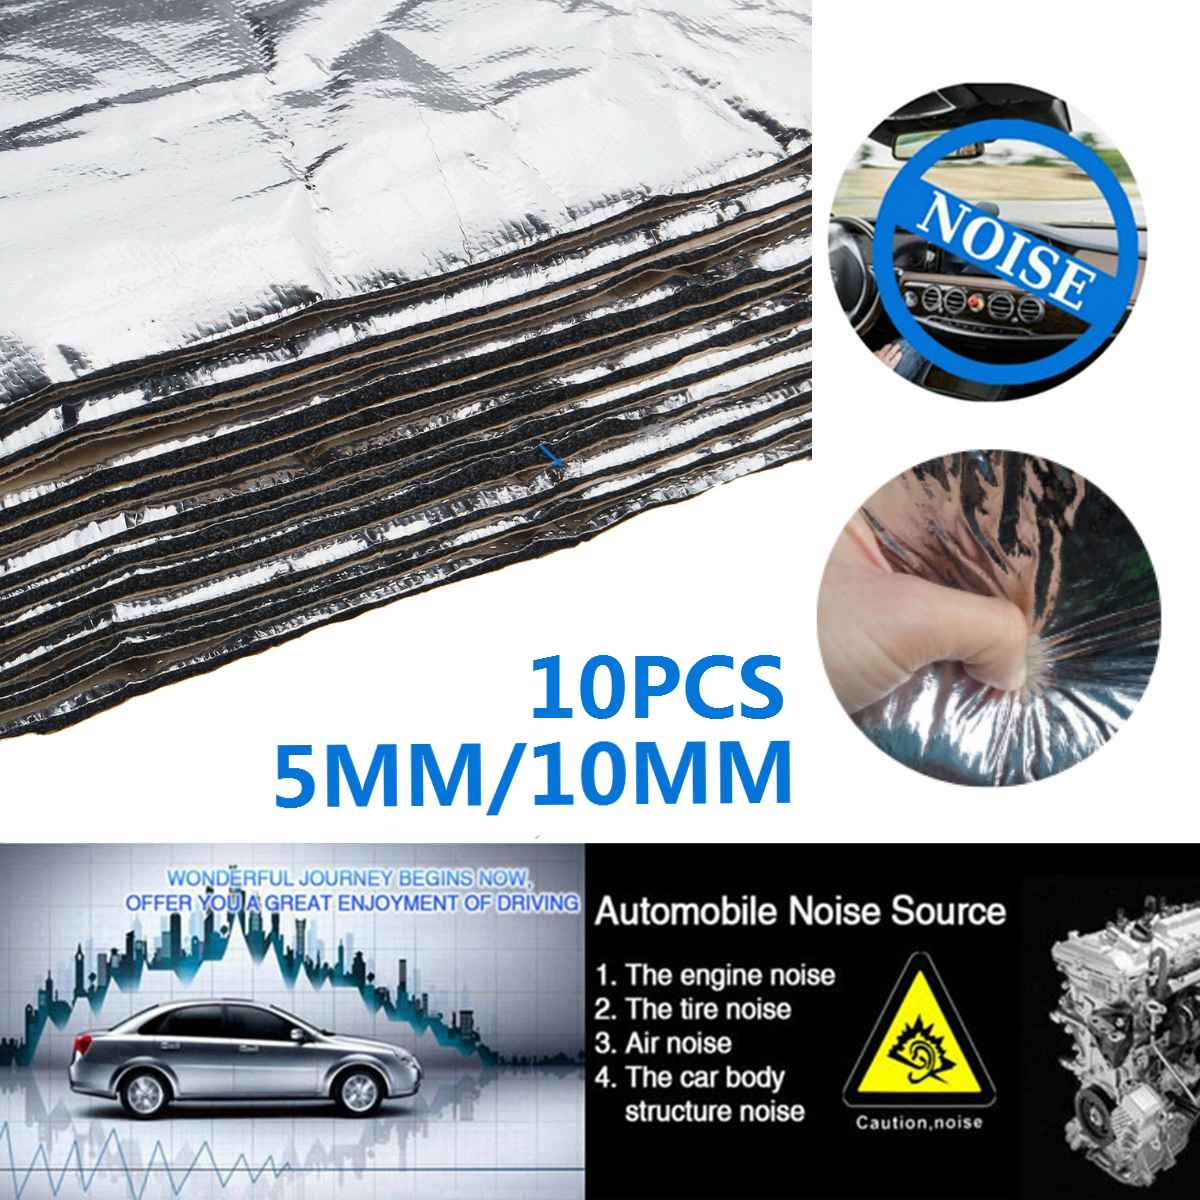 10Pcs 30x50cm 10mm Adhesive Car Soundproof Foam Cotton Home Deadening Insulation Pads Sound Absorbing Cotton Anti Noise Sponge